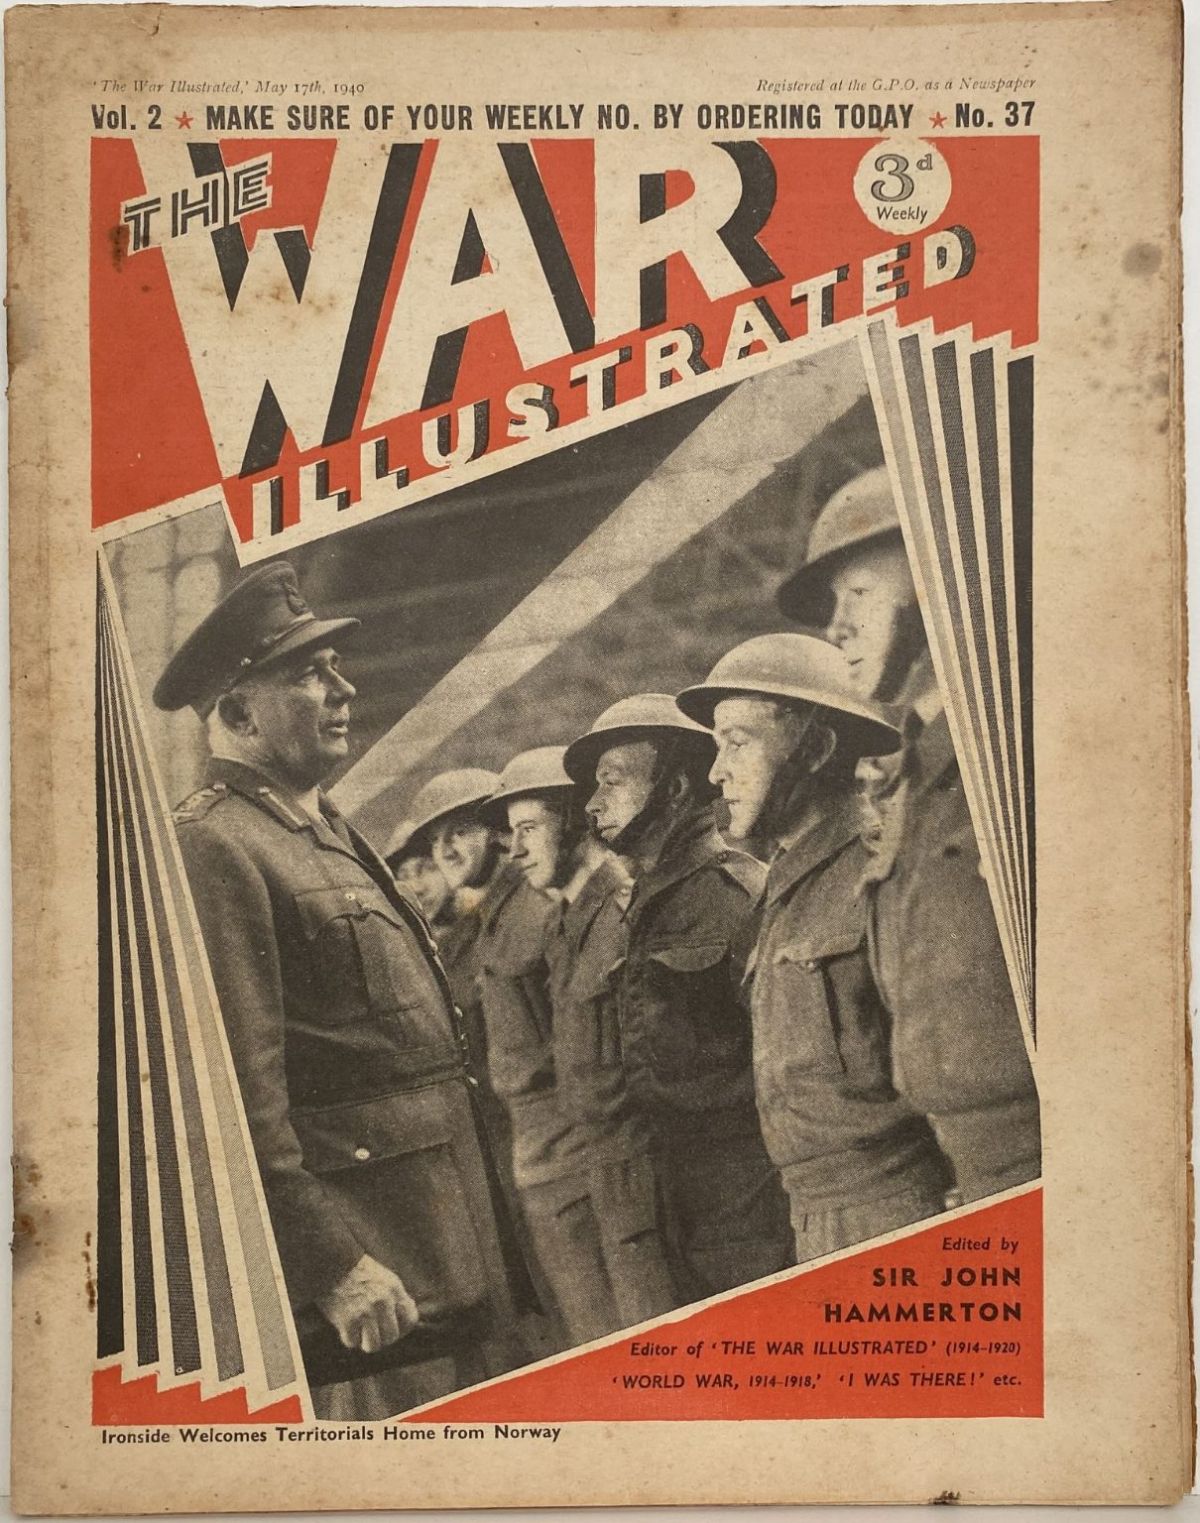 THE WAR ILLUSTRATED - Vol 2, No 37, 17th May 1940